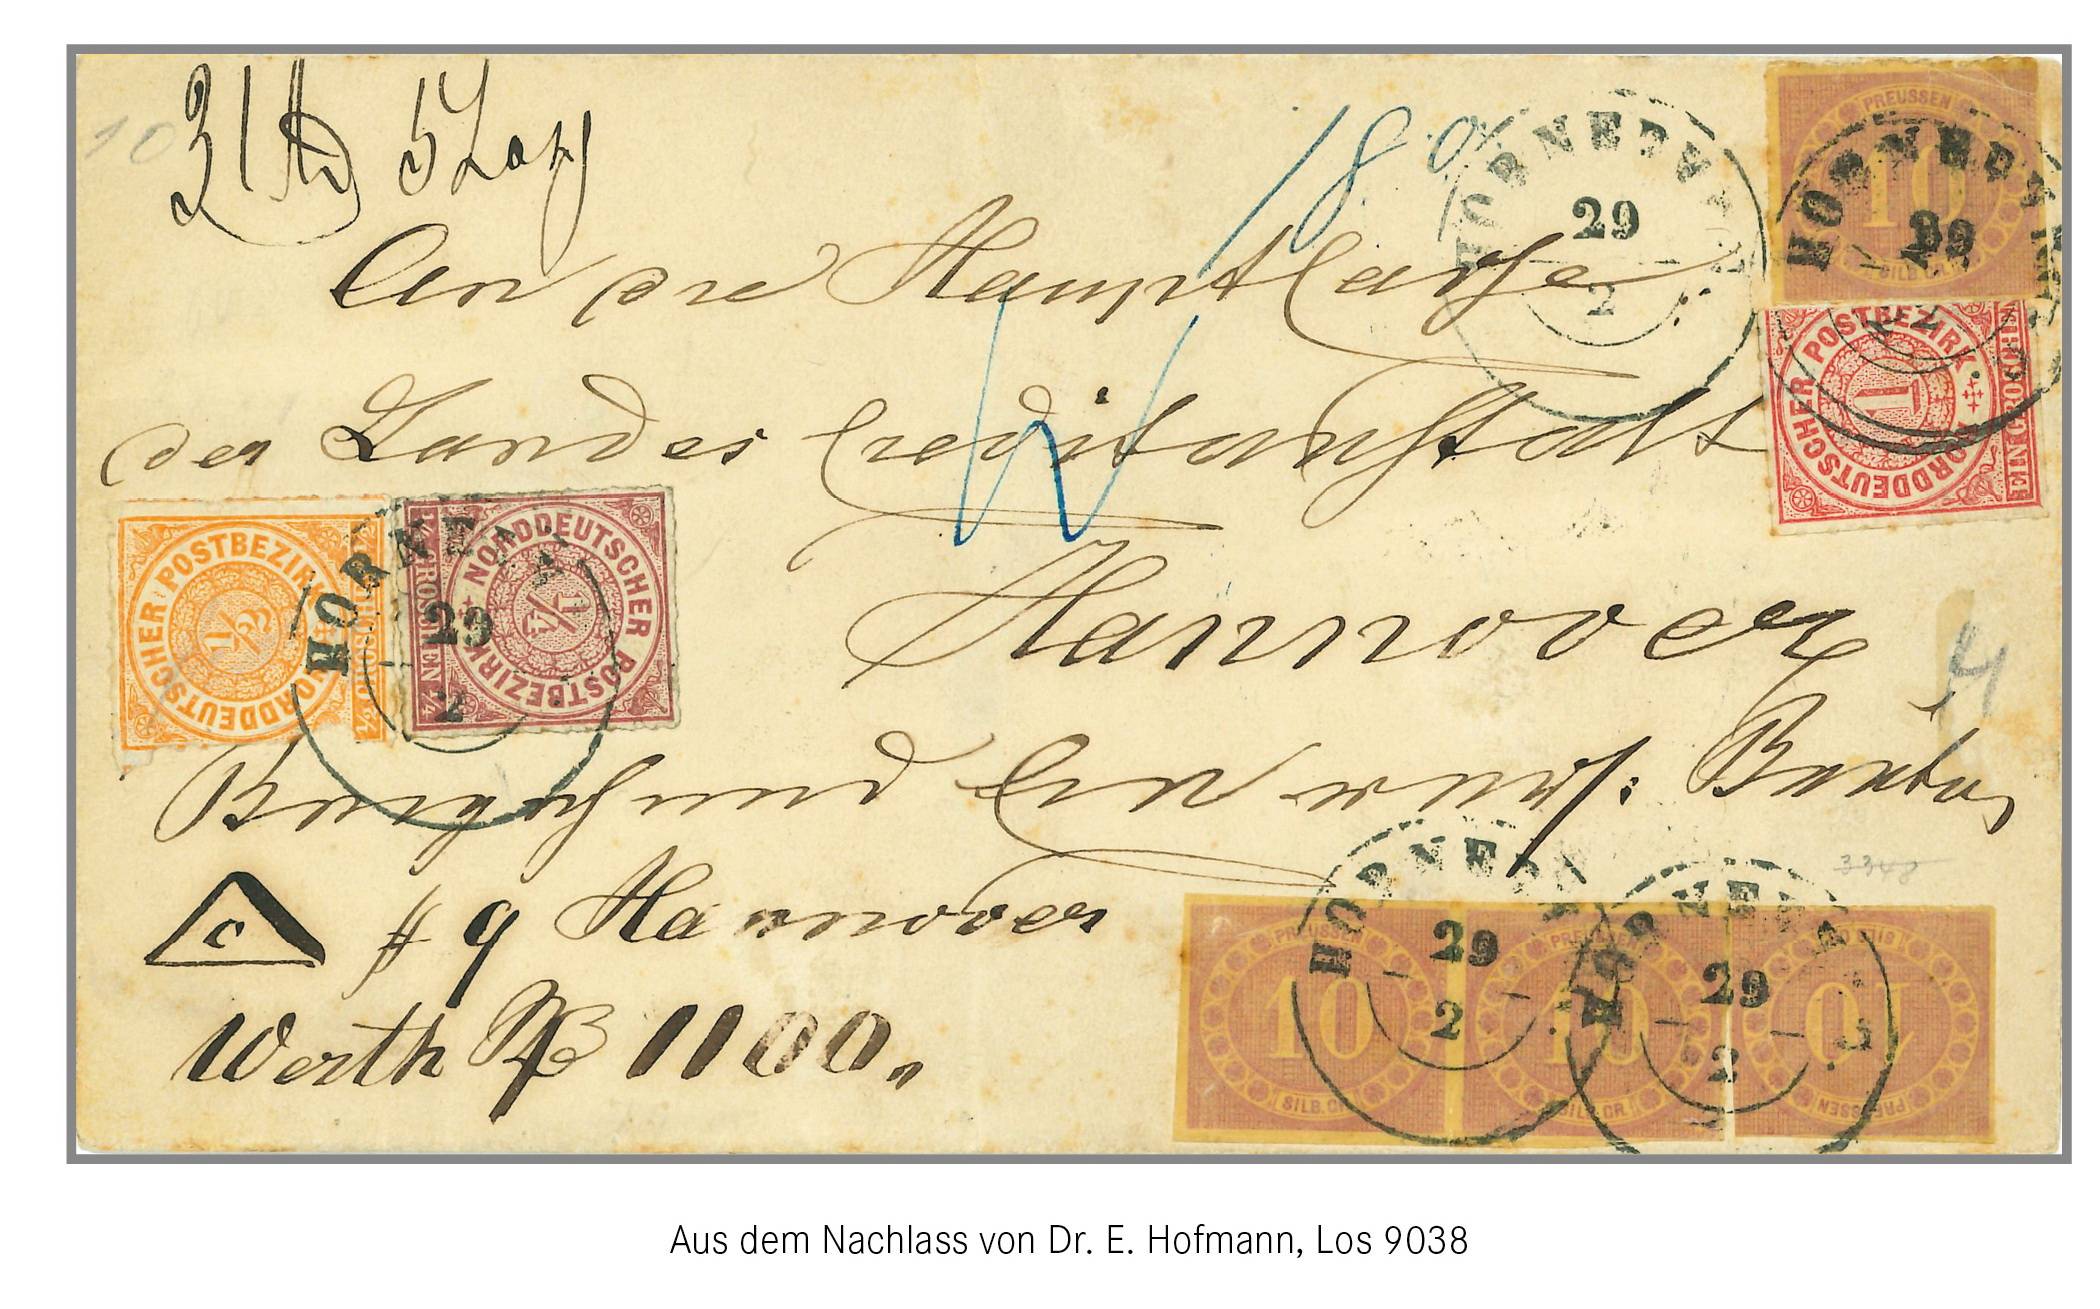 52.500 Euro für Briefmarken aus Wuppertal